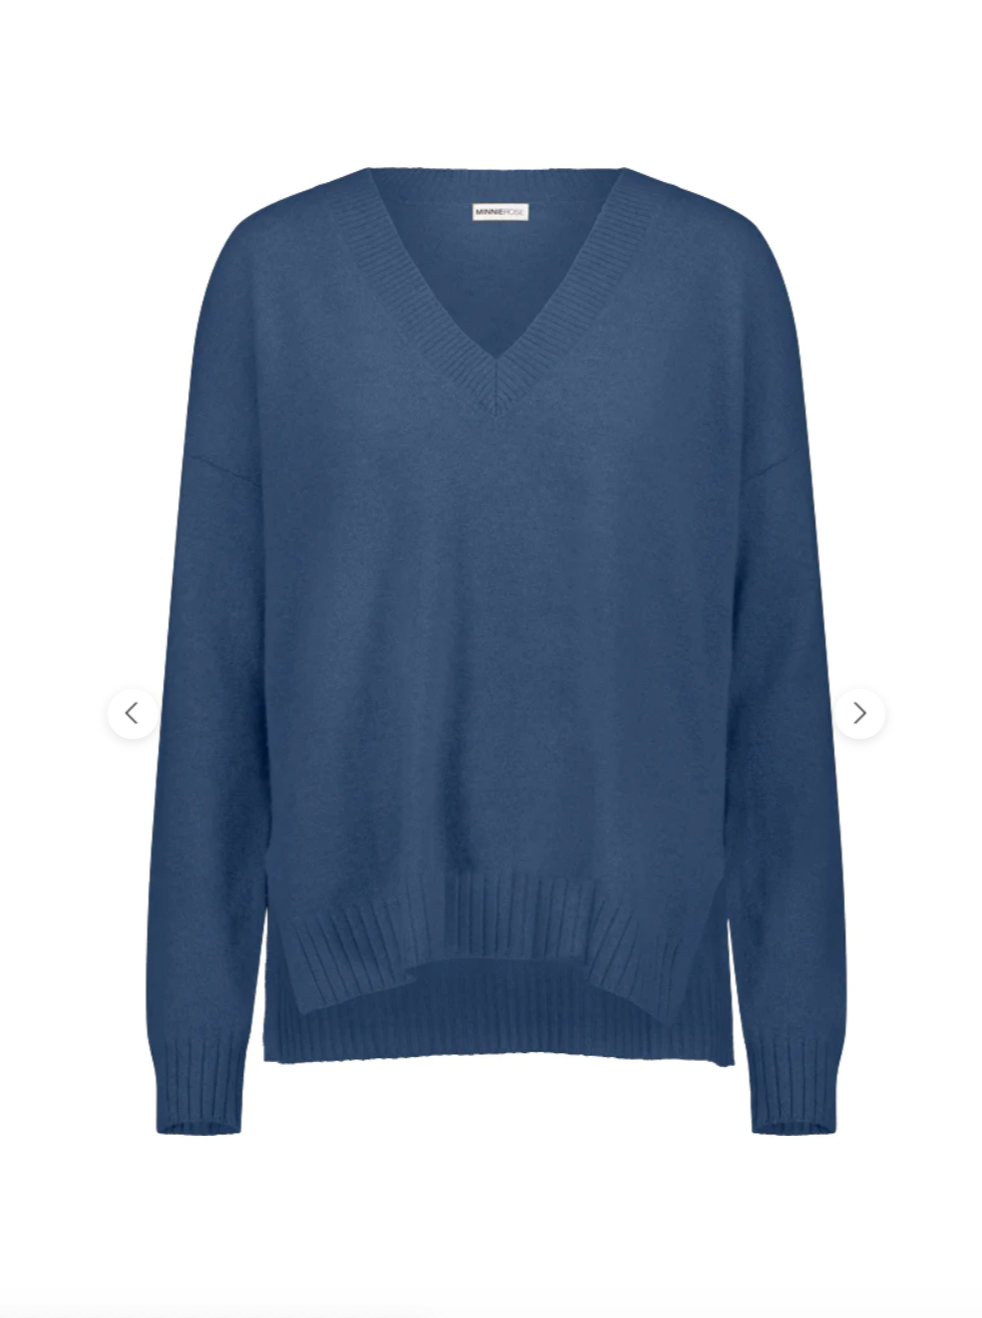 Cotton/Cashmere V Neck Oversized Pullover | Harbour Blue + Camel-Sea Biscuit Del Mar